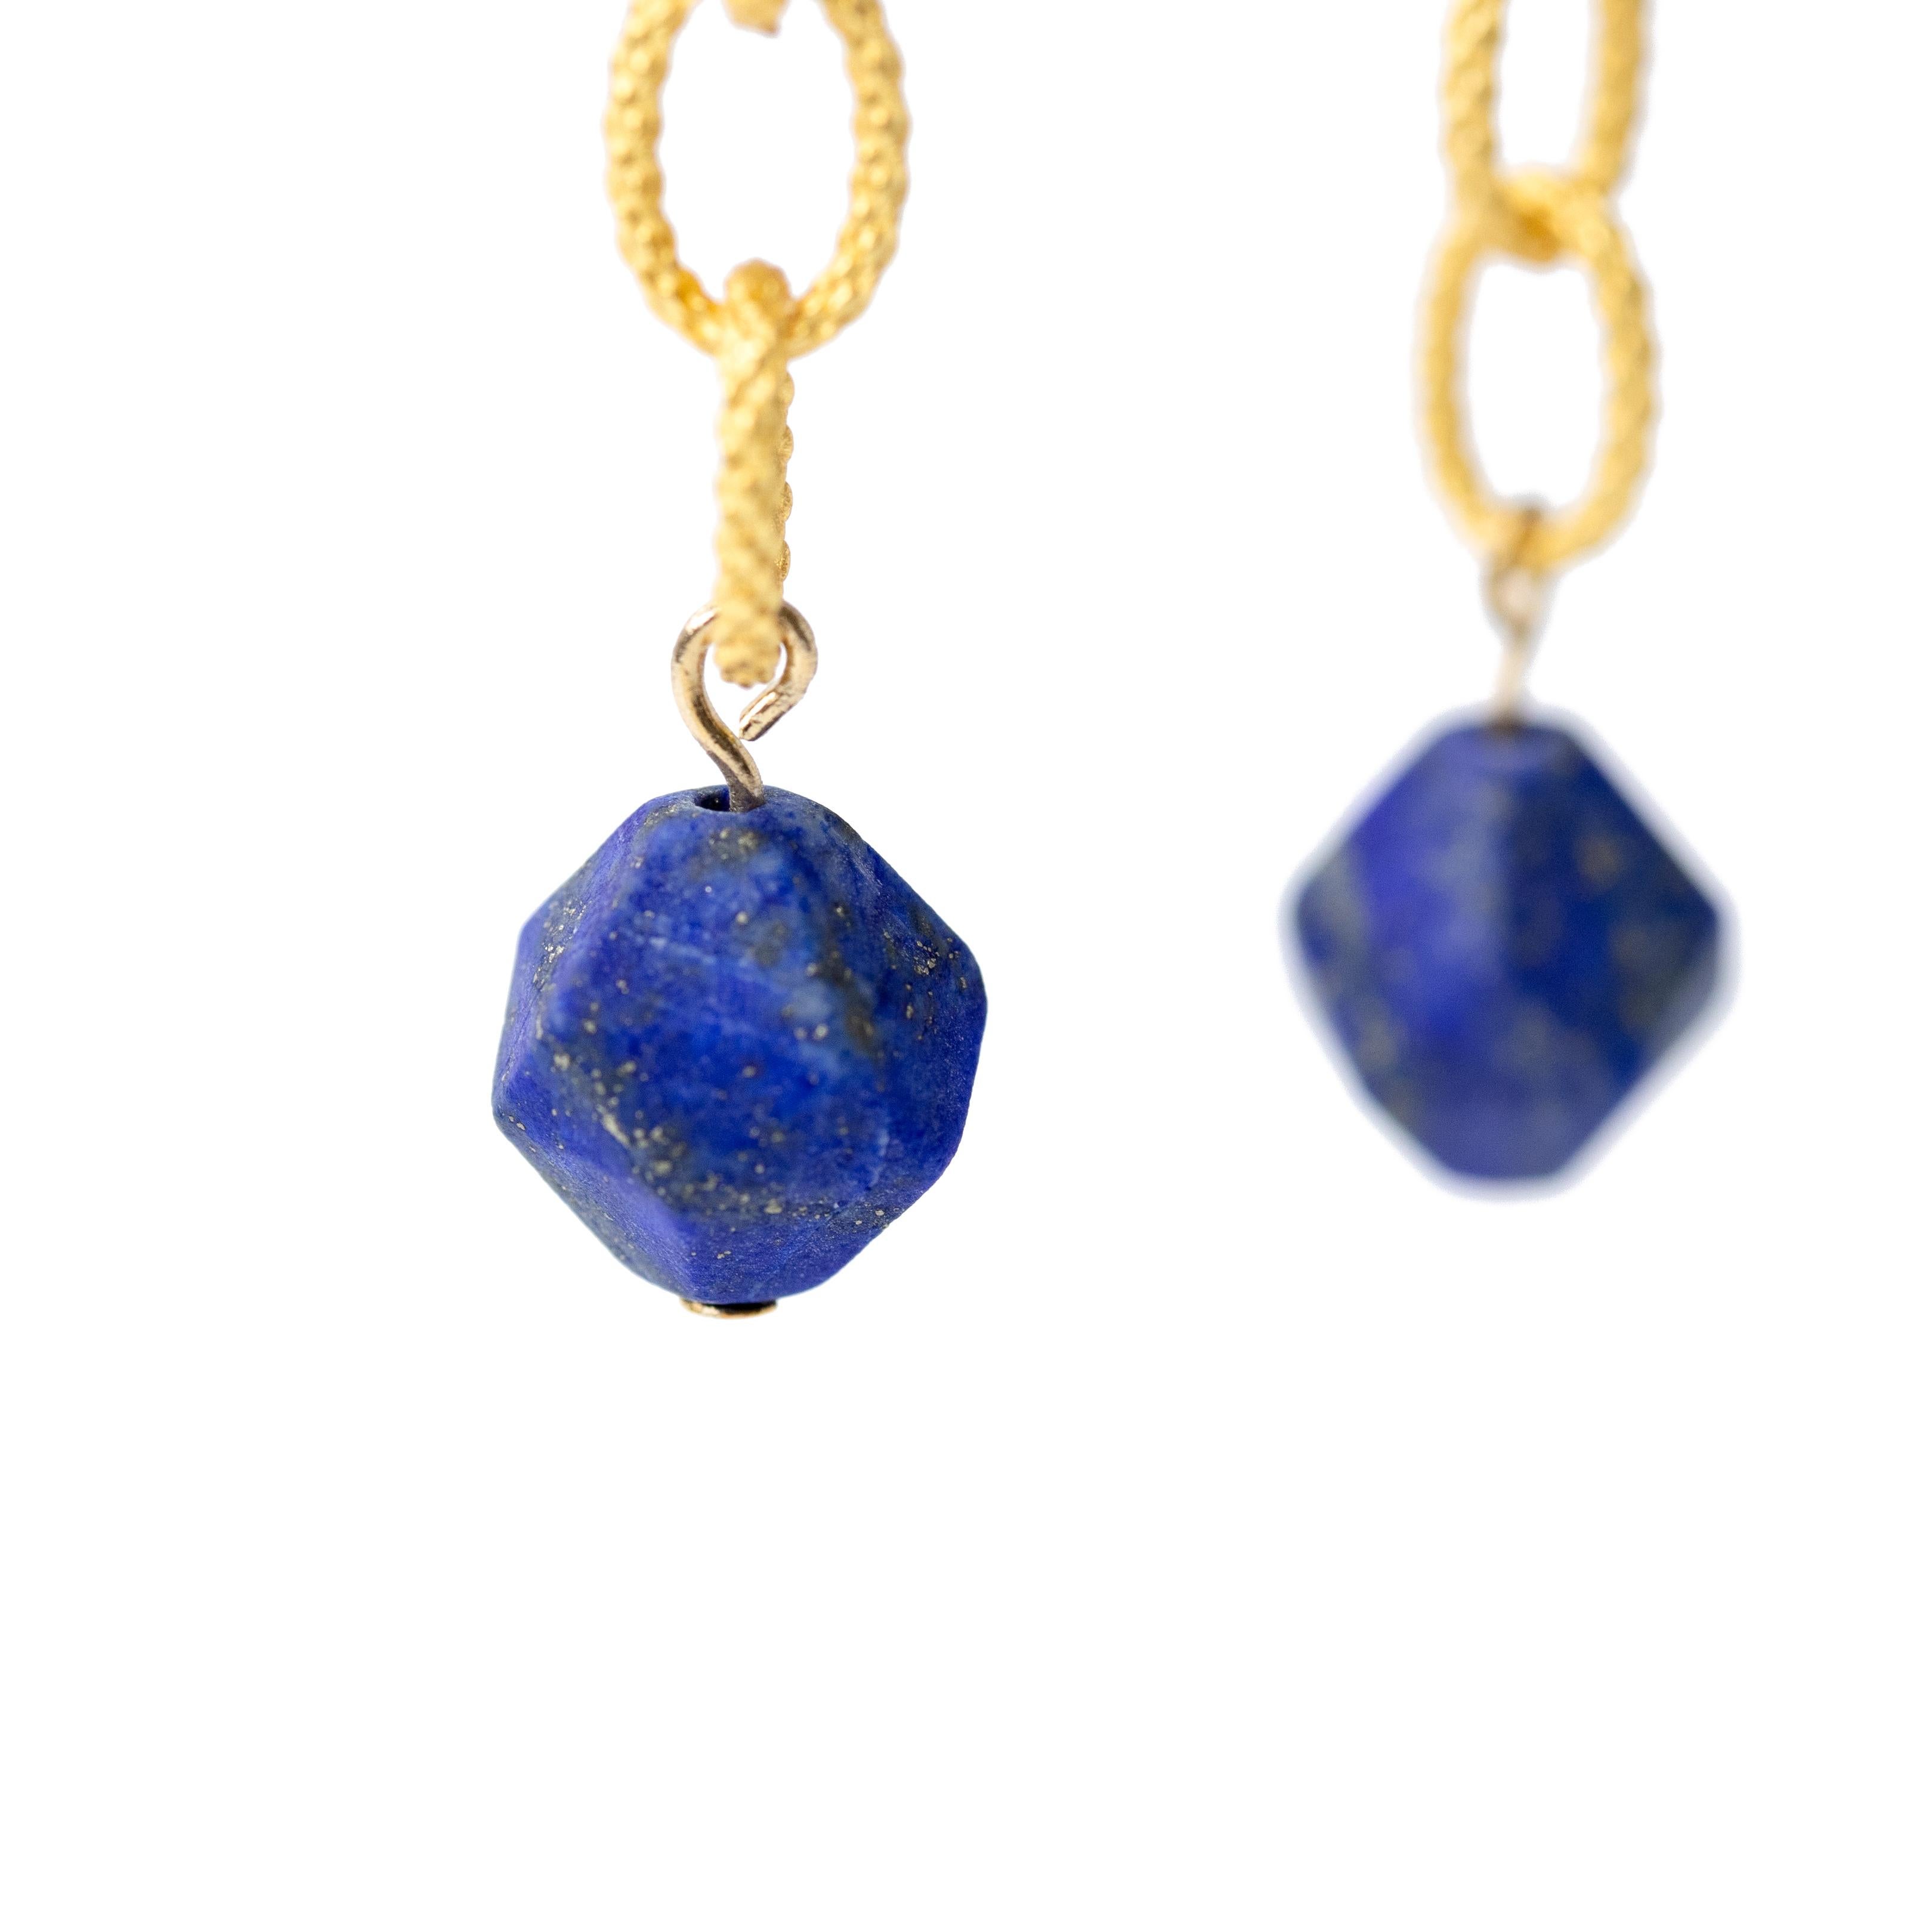 Ces boucles d'oreilles sont fabriquées à la main à partir de lapis-lazuli et d'une chaîne en or détaillée. Ils vous offrent le mélange parfait de subtilité et d'élégance pour vous démarquer sans effort. 

* Longueur totale de 2,5 pouces
* Perles de